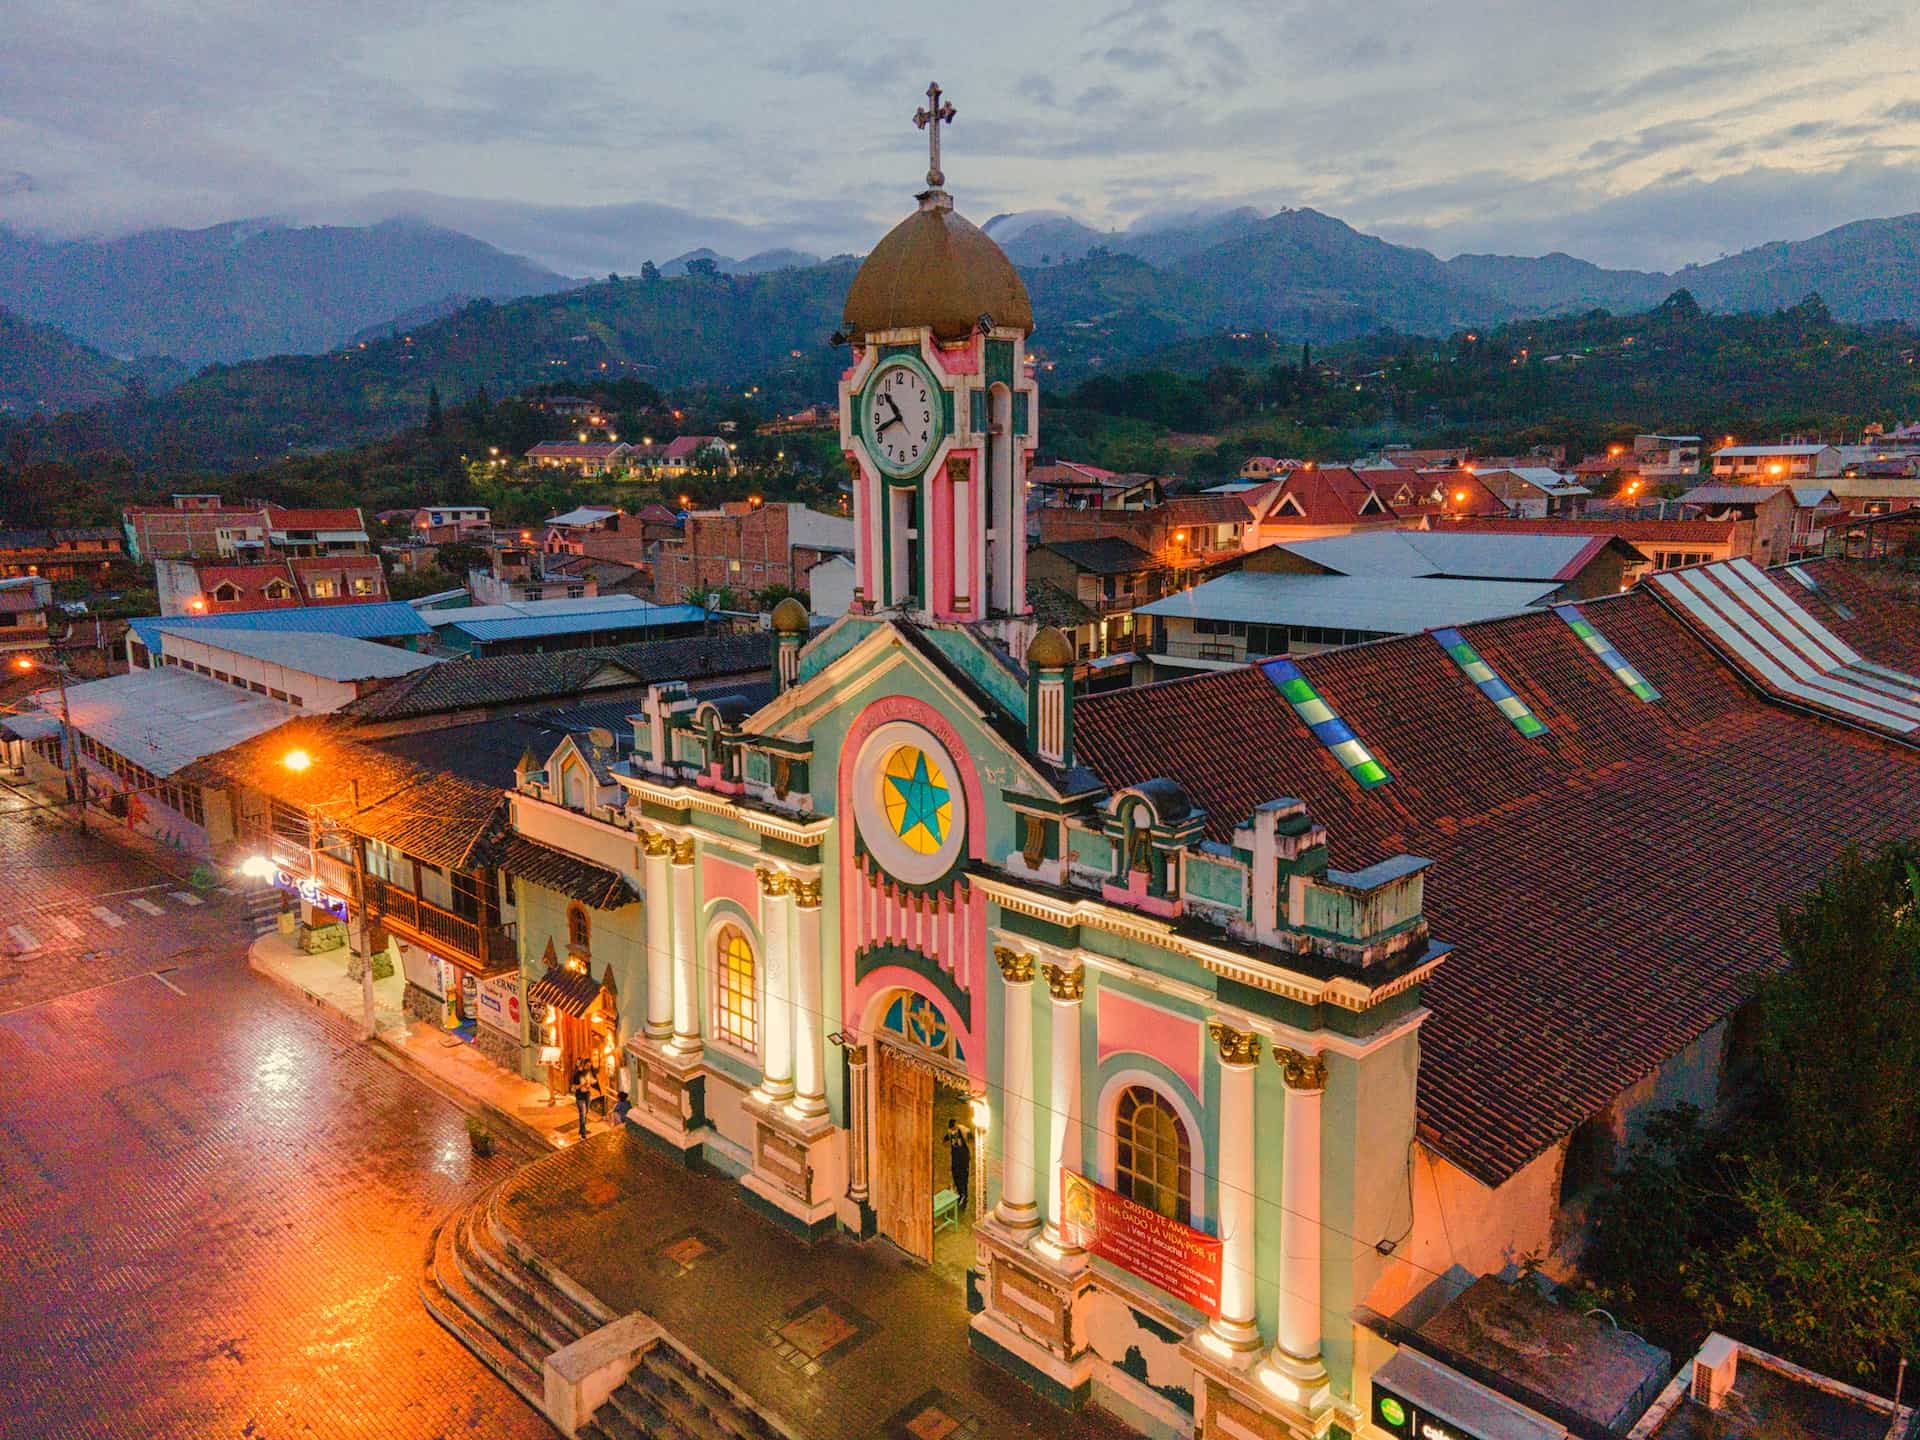 A colorful building in Vilcabamba, Ecuador.